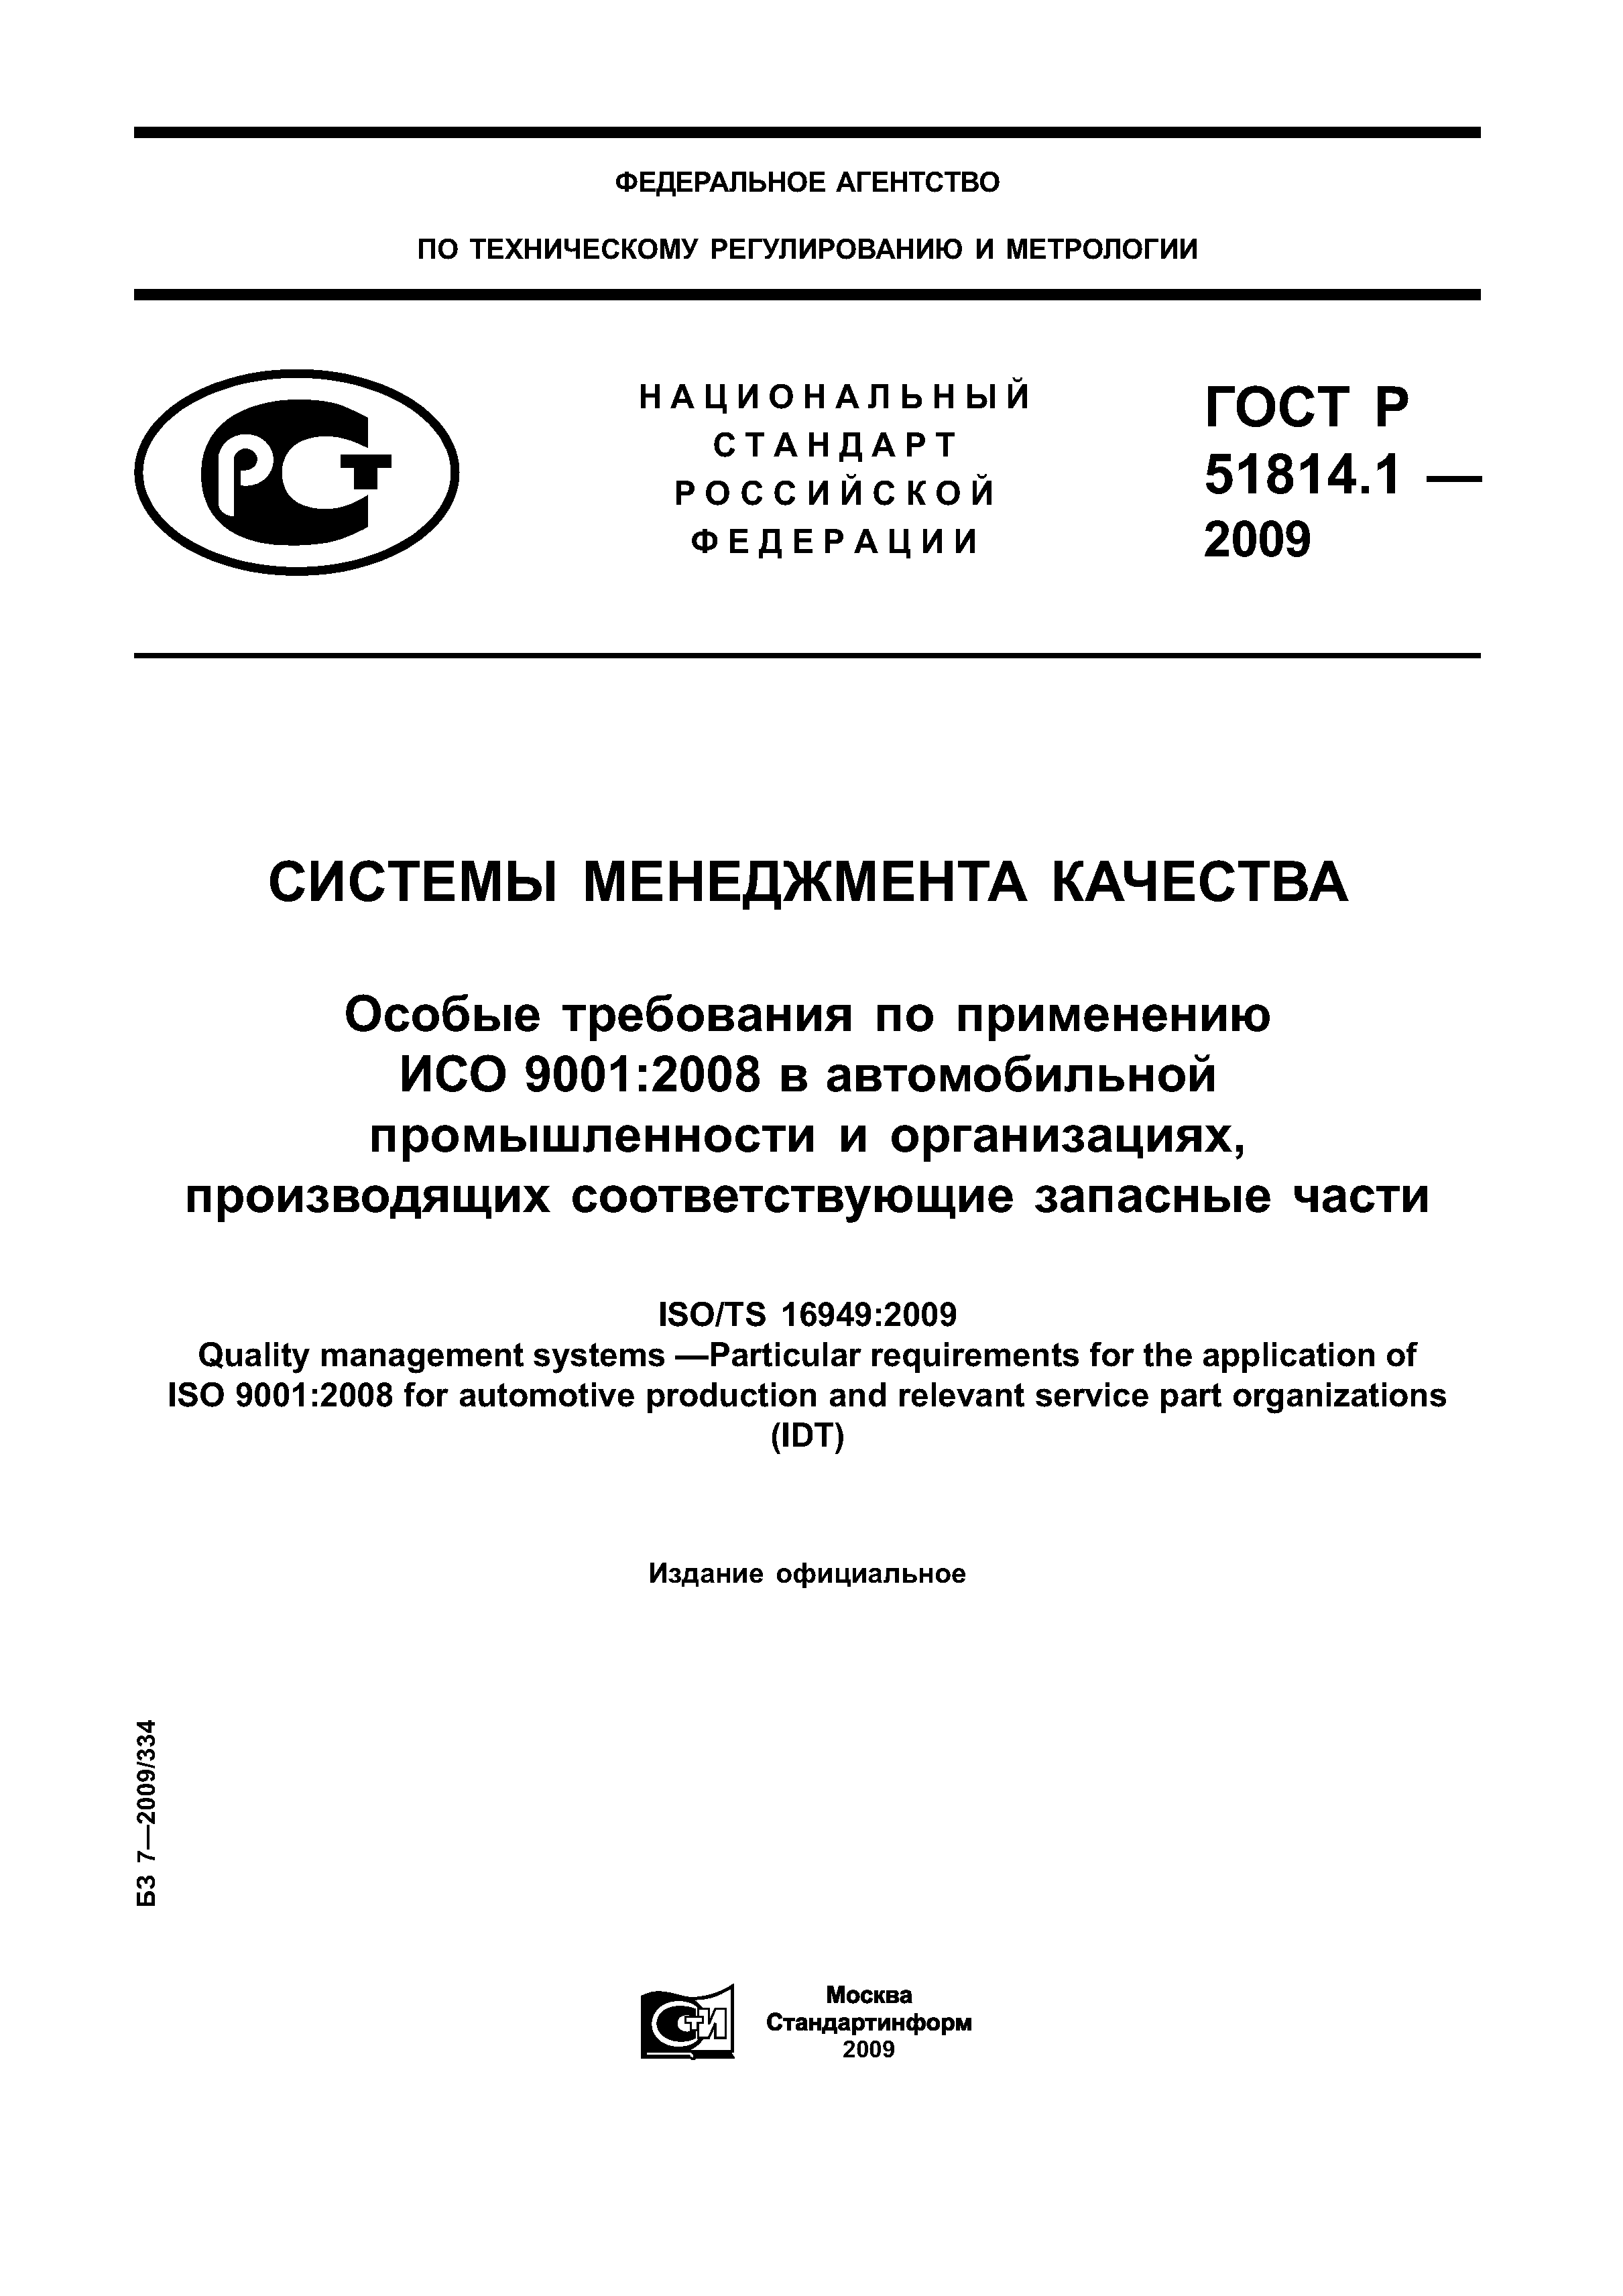 ГОСТ Р ИСО/ТУ 16949-2009